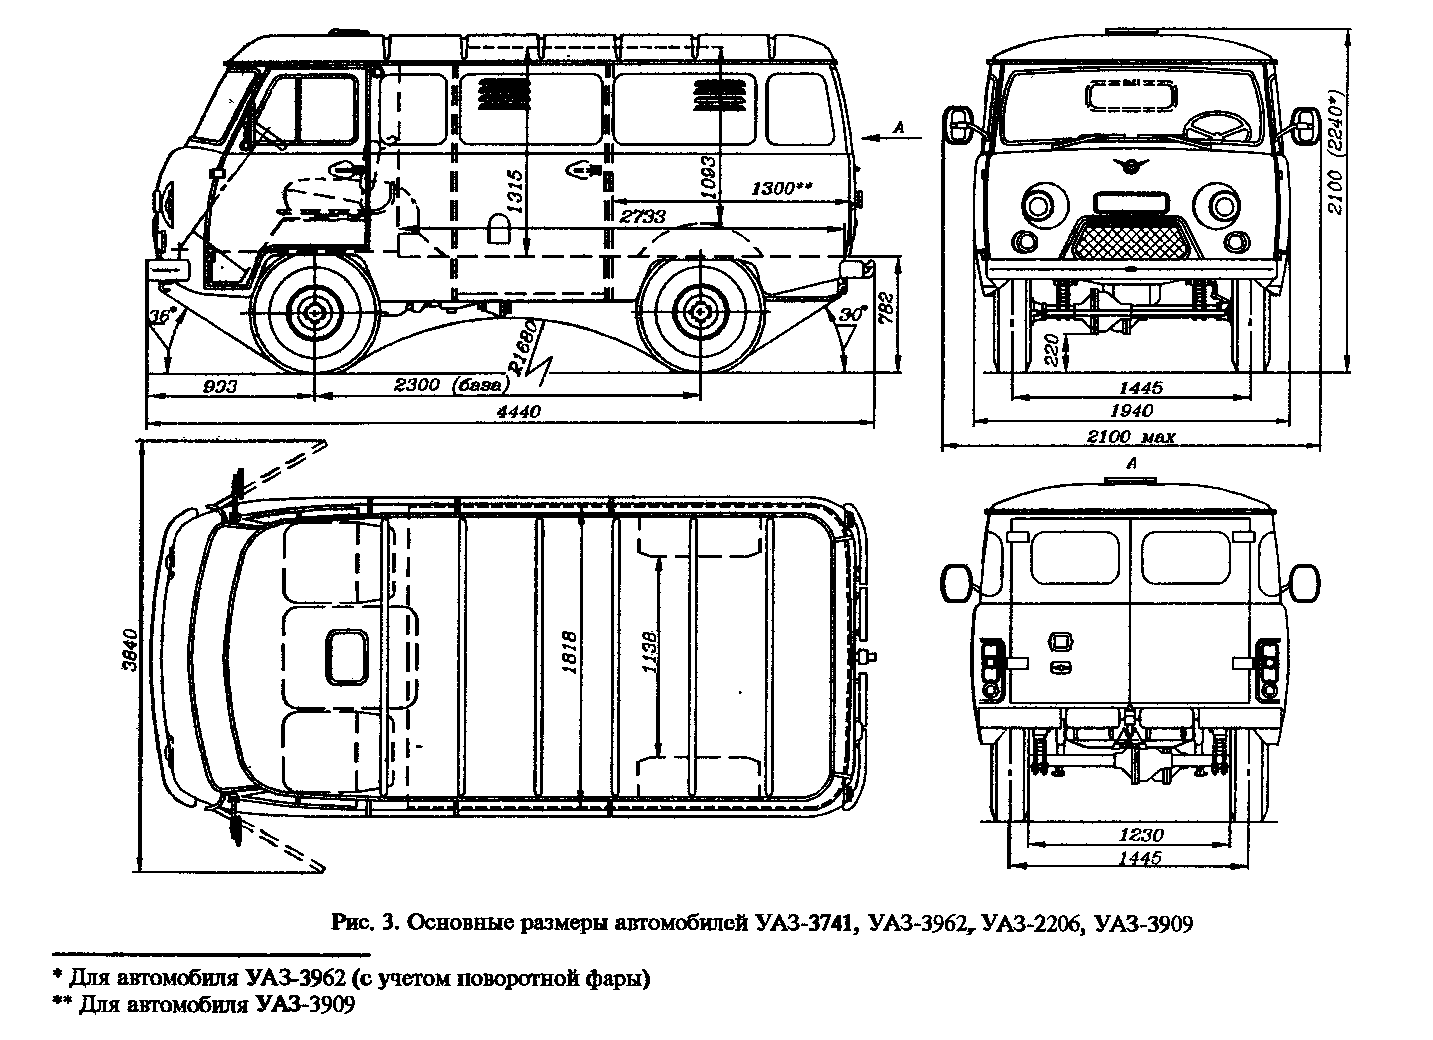 Уаз-452